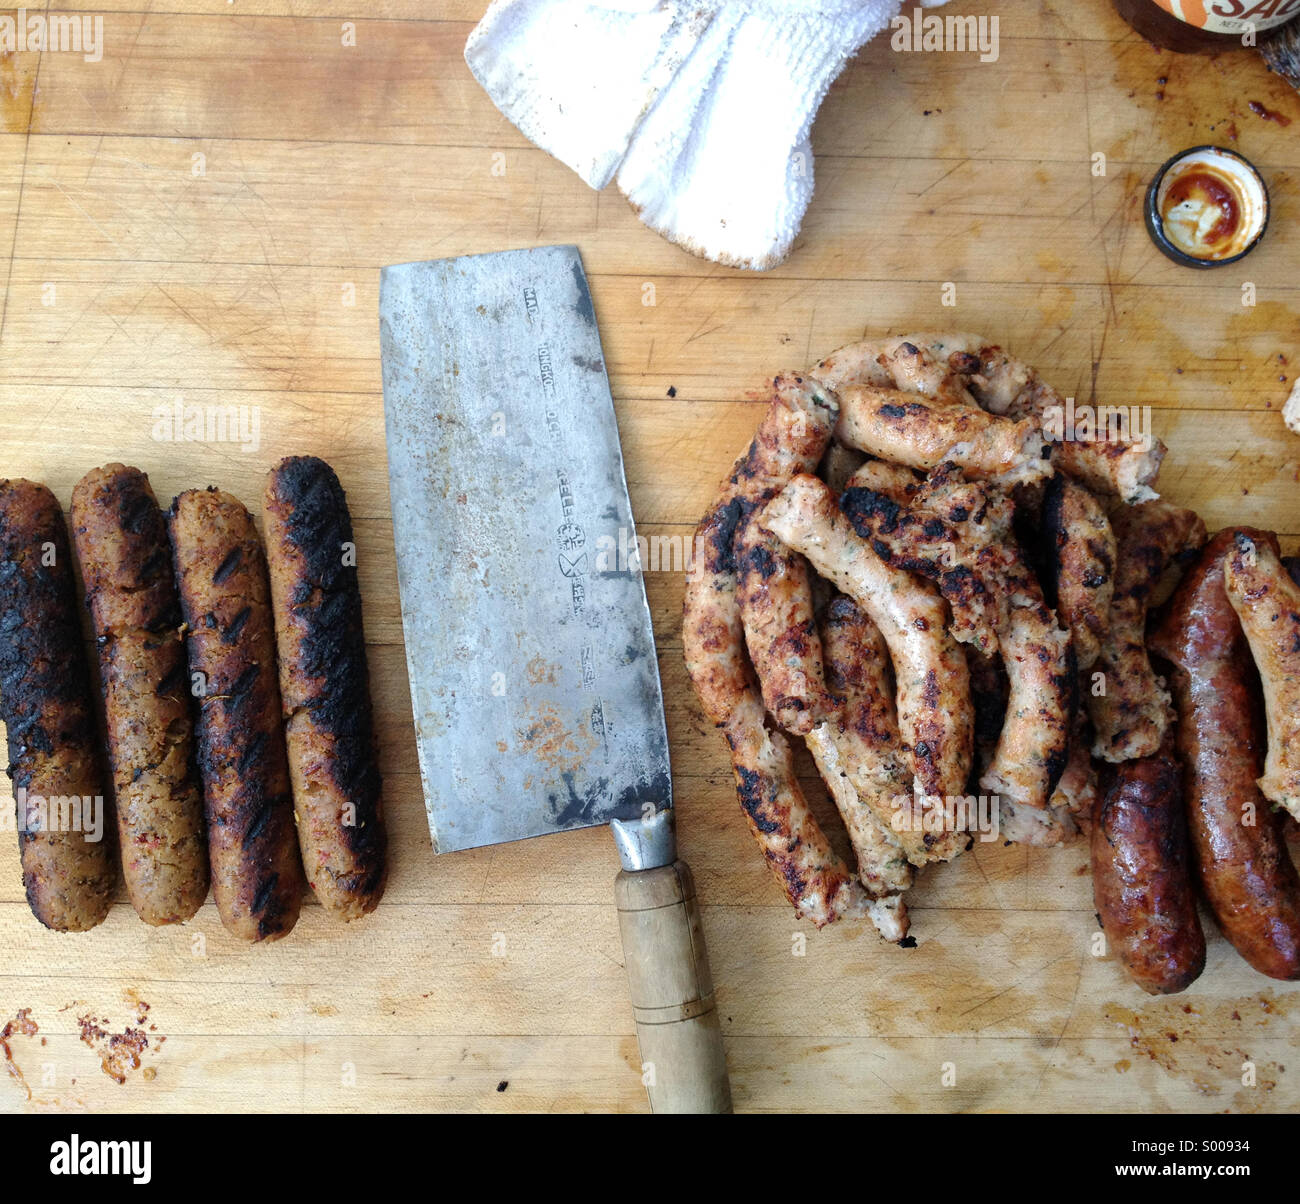 Un barbecue avec des saucisses végétariennes et vraie viande saucisse, séparés par une cleaver Banque D'Images